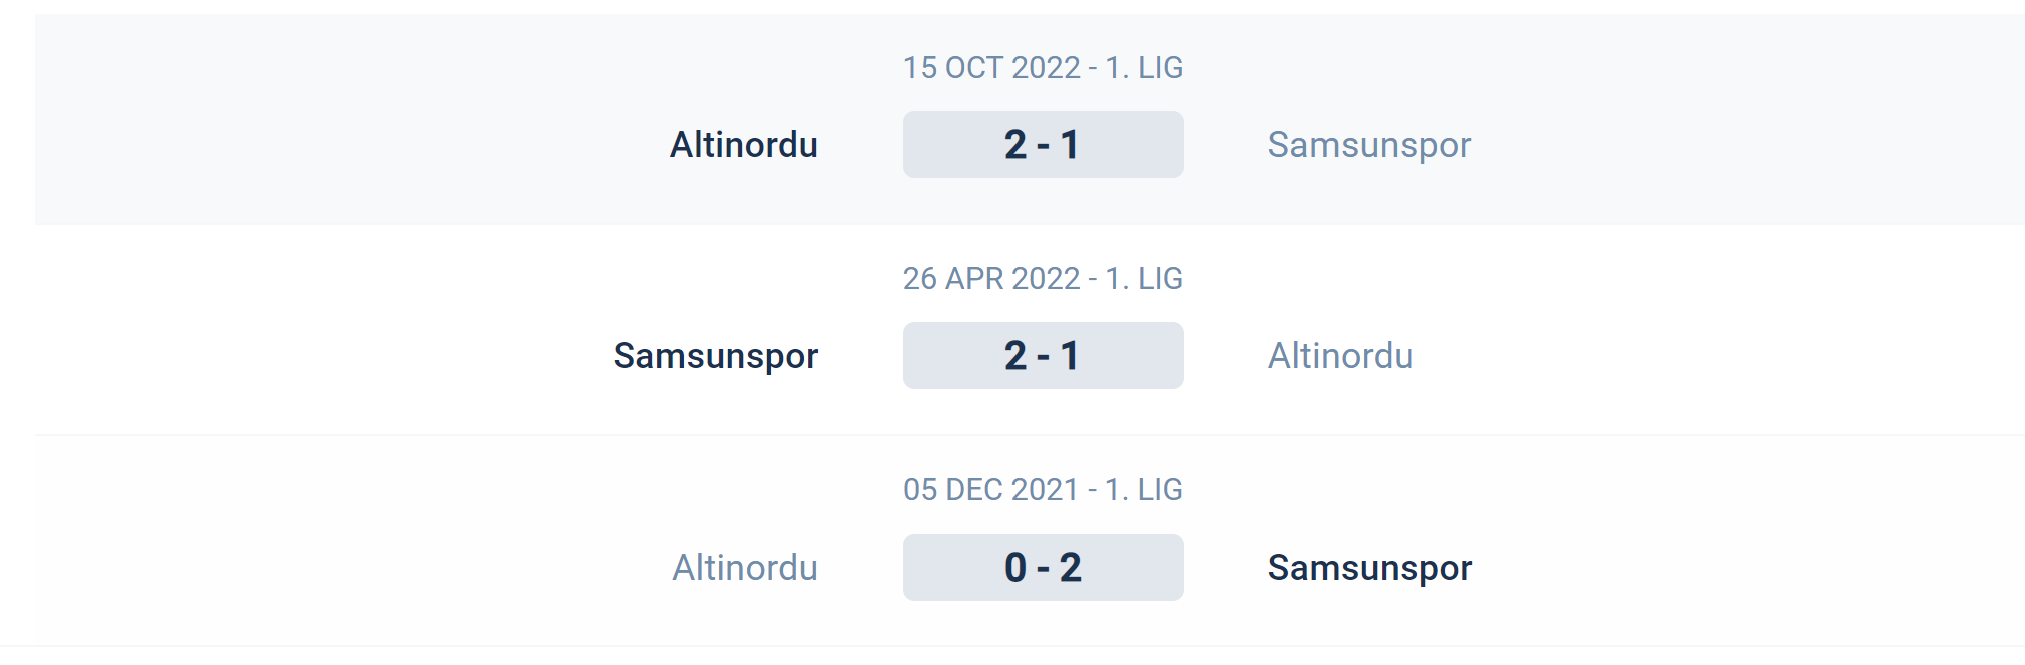 Kết quả lịch sử đối đầu Samsunspor vs Altinordu